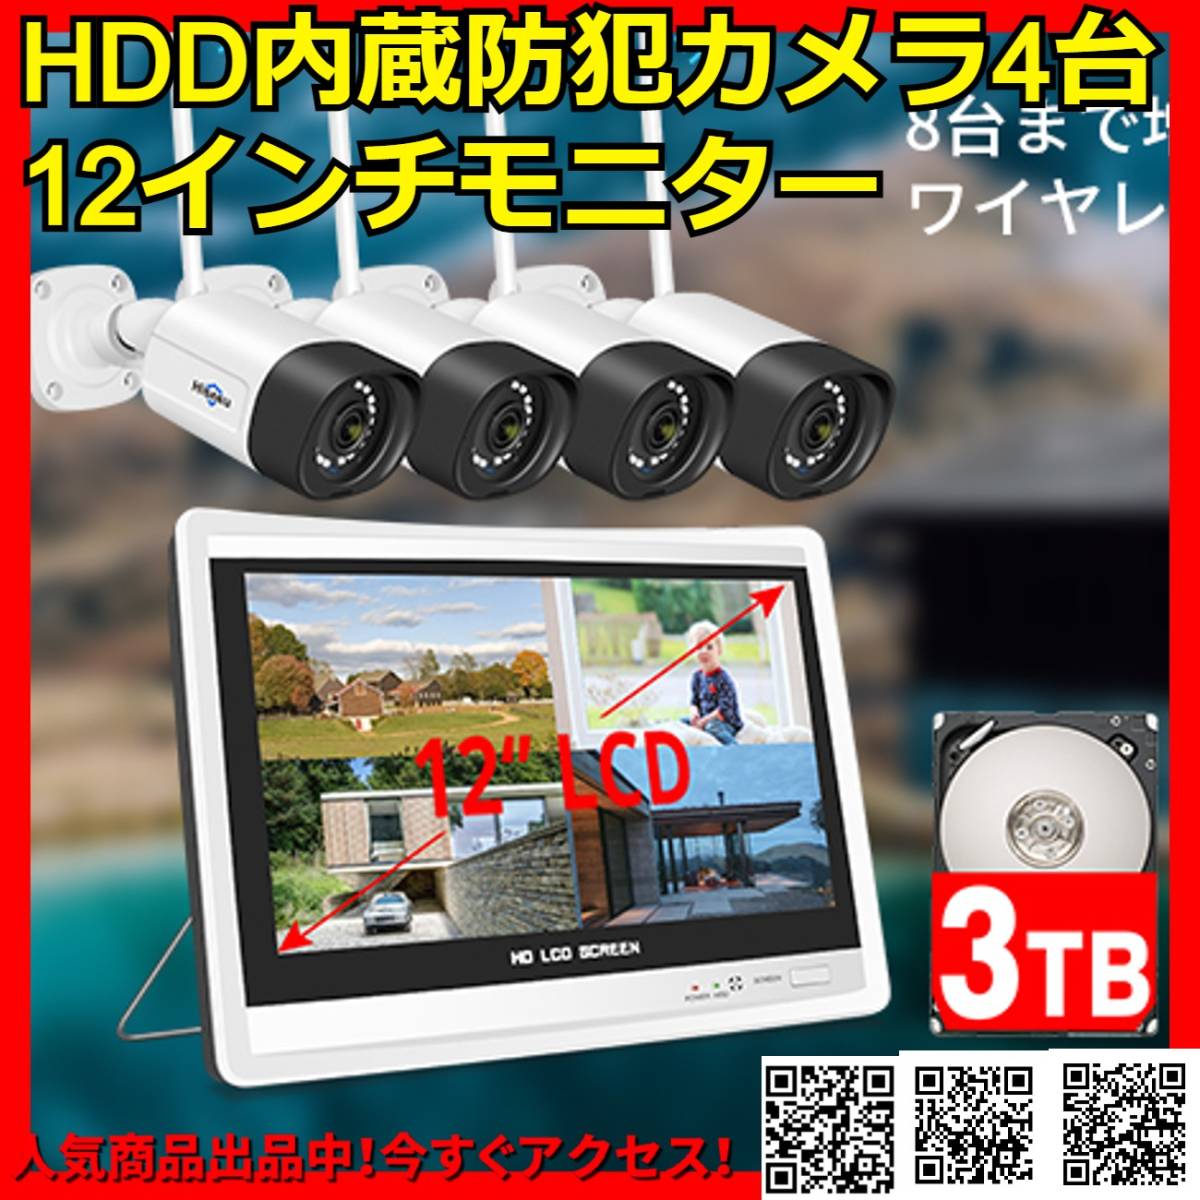 300万画素 4台防犯カメラ 3TB HDD内蔵 無線 動体検知 ワイヤレス 暗視